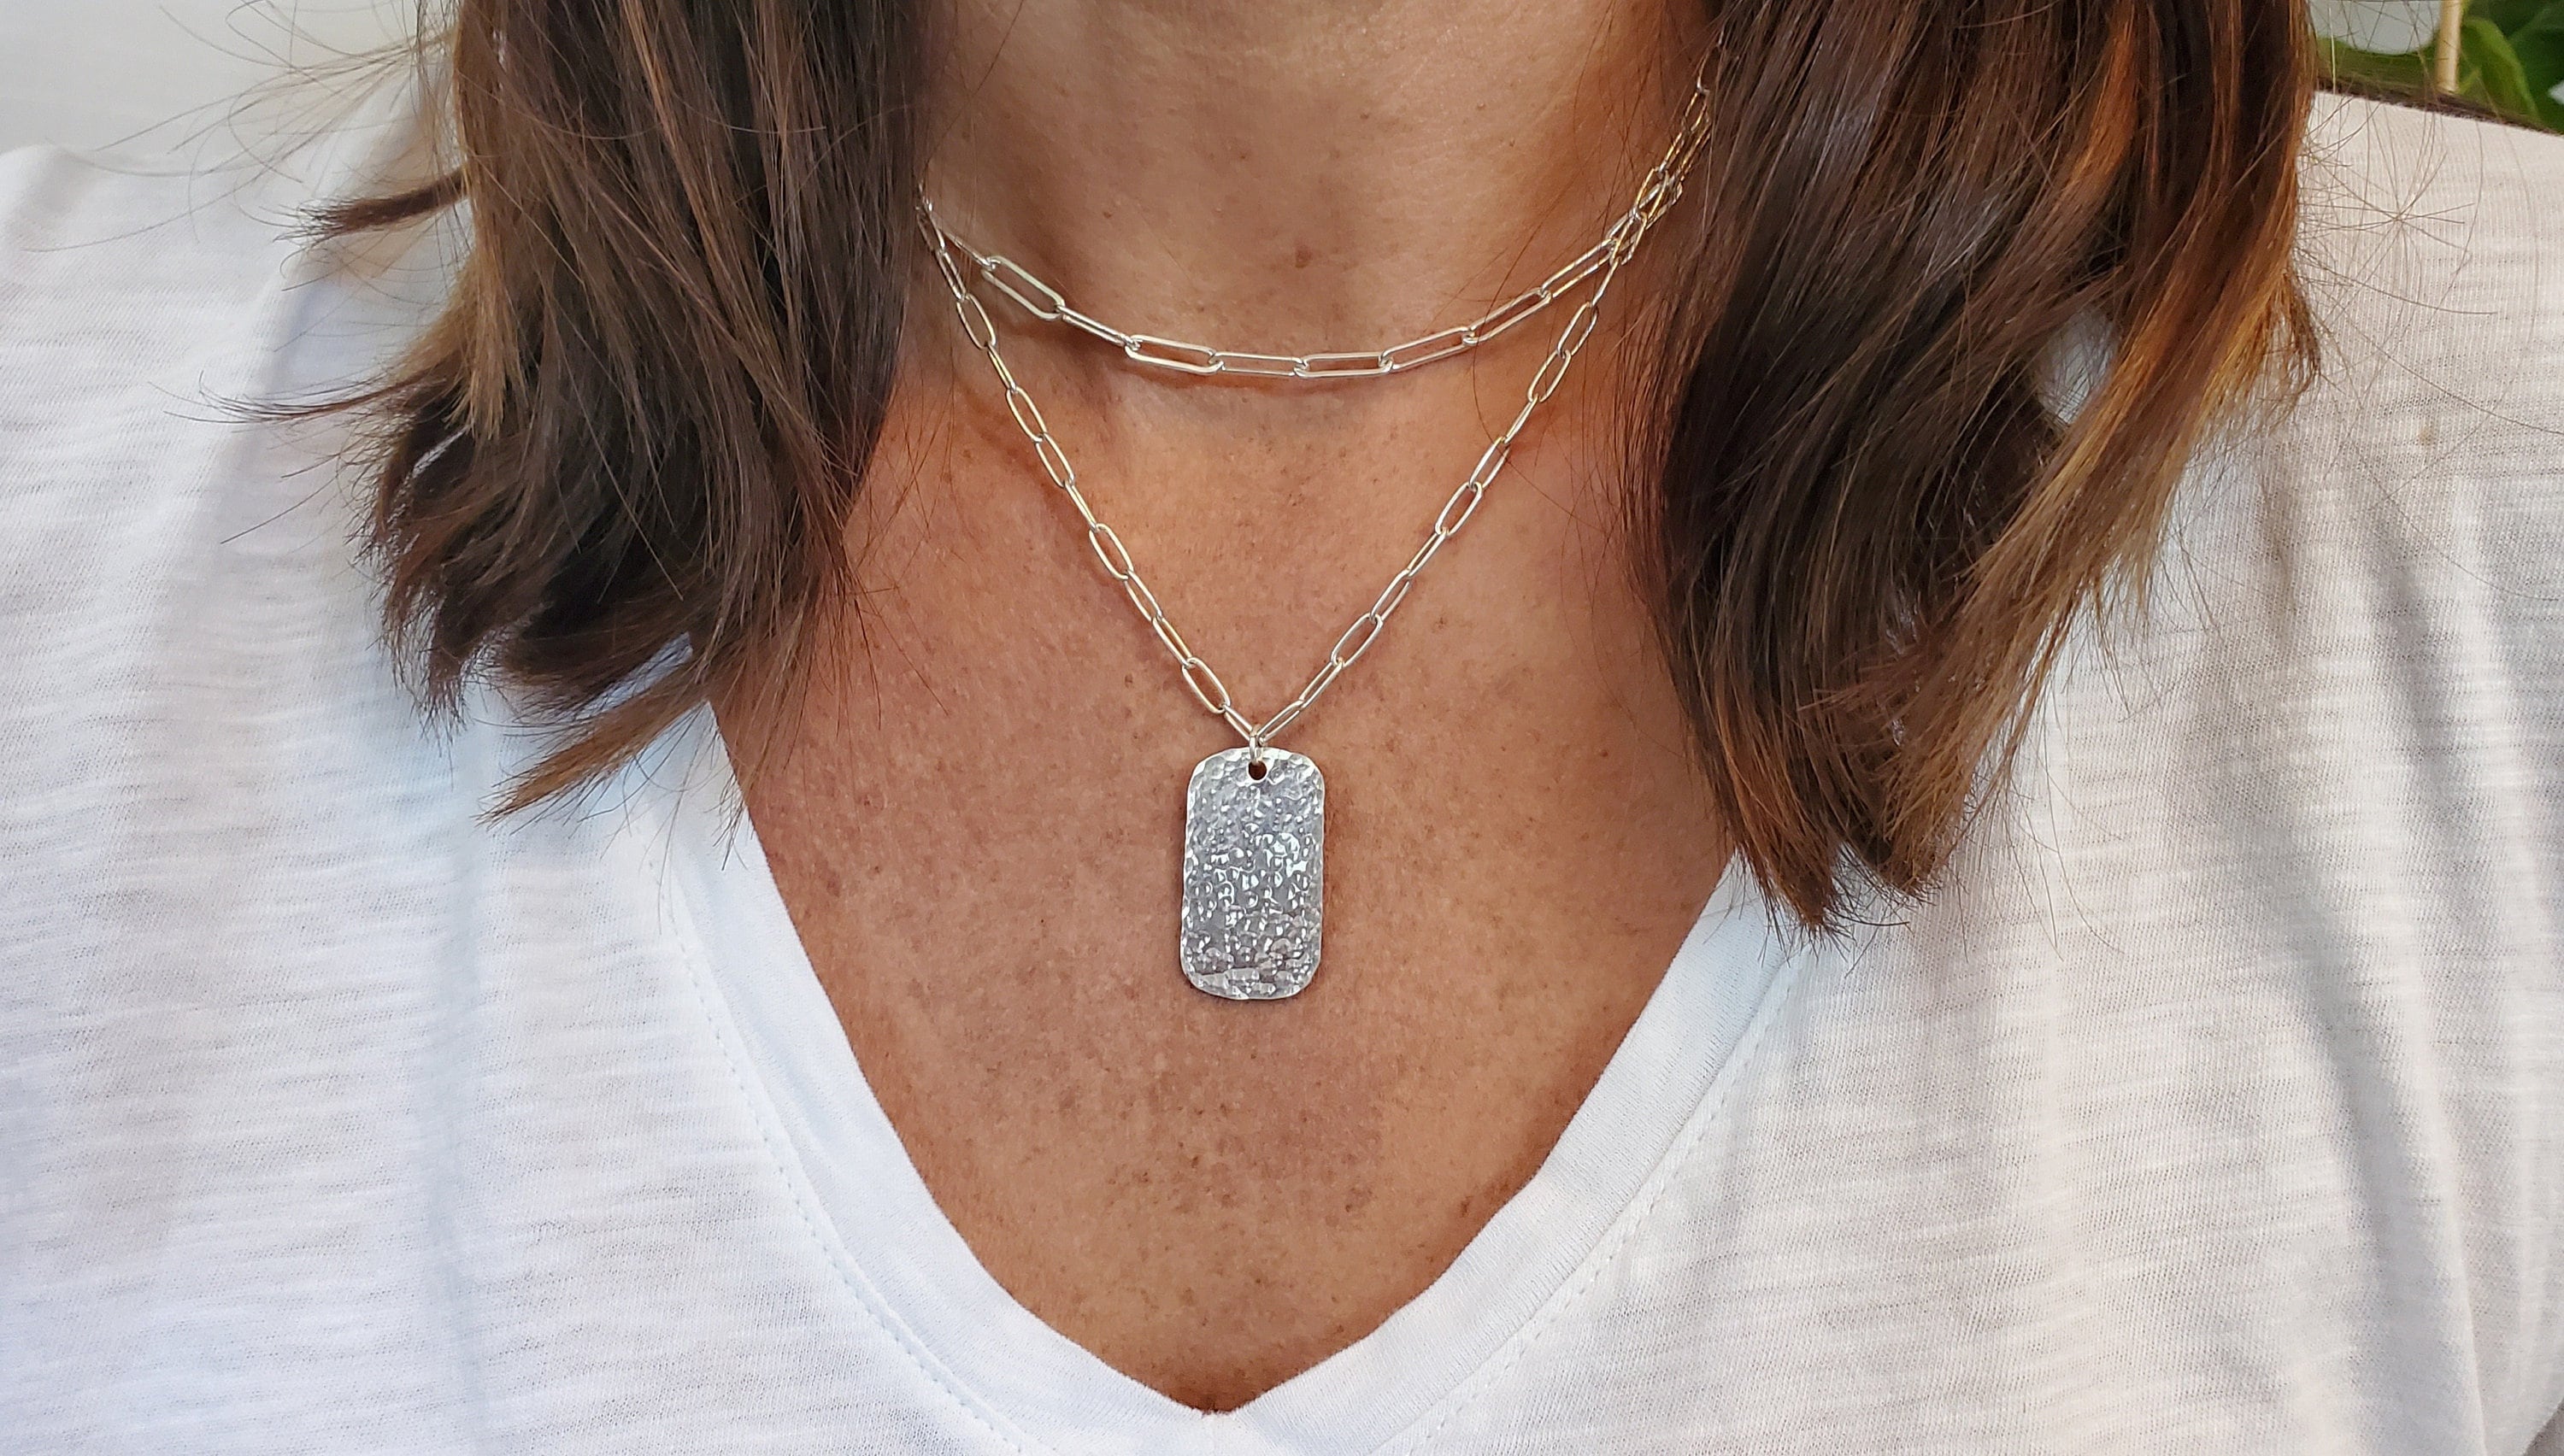 Minimal Tag Necklace - Silver